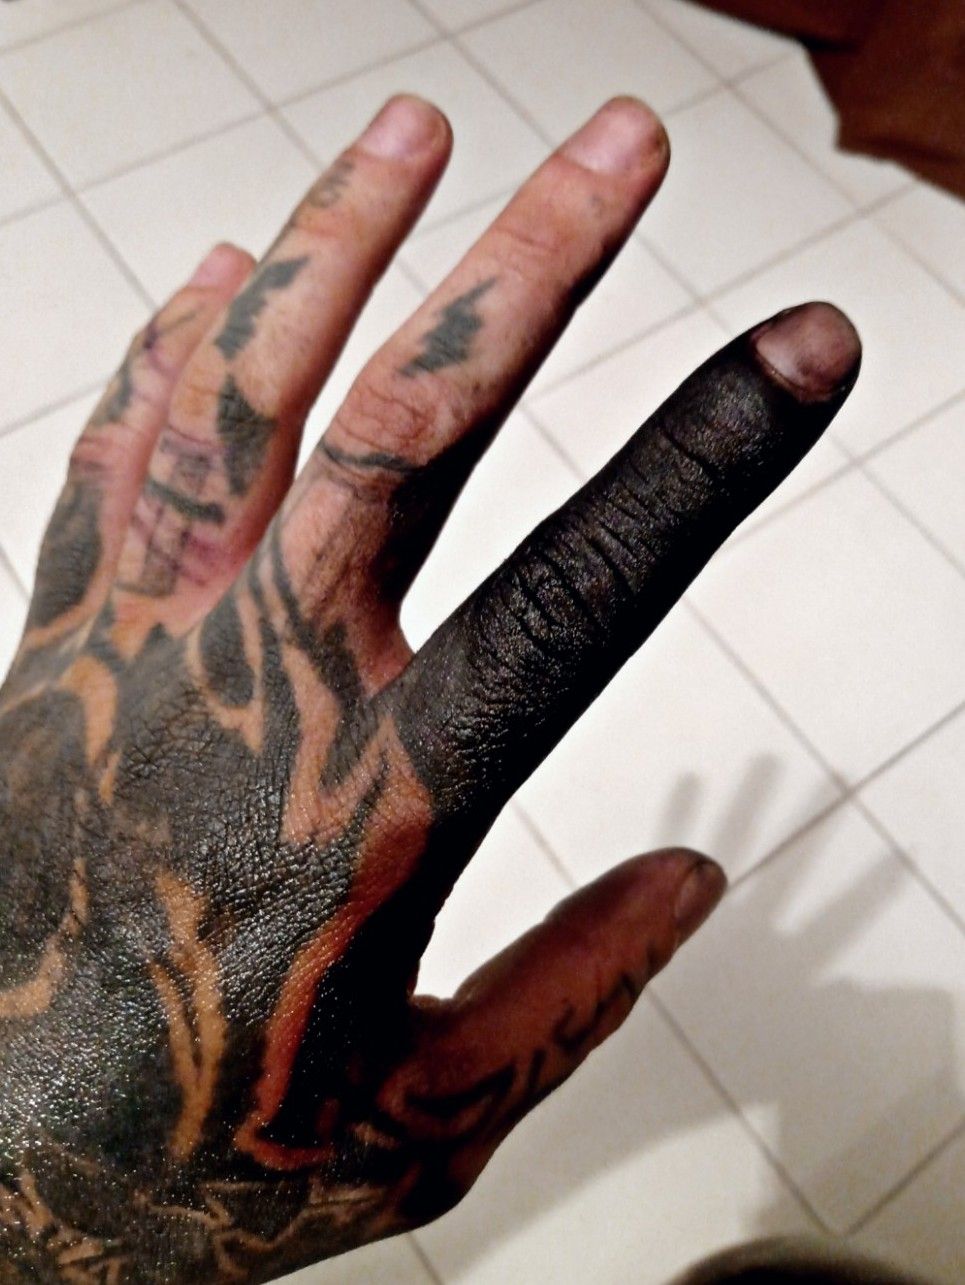 Chester Lee Blackout on Instagram Finger bang  blackwork black  blackworkers blackworkerssubmission tattoo tattoos ink inked  inkedmag fingertattoos blackonblack